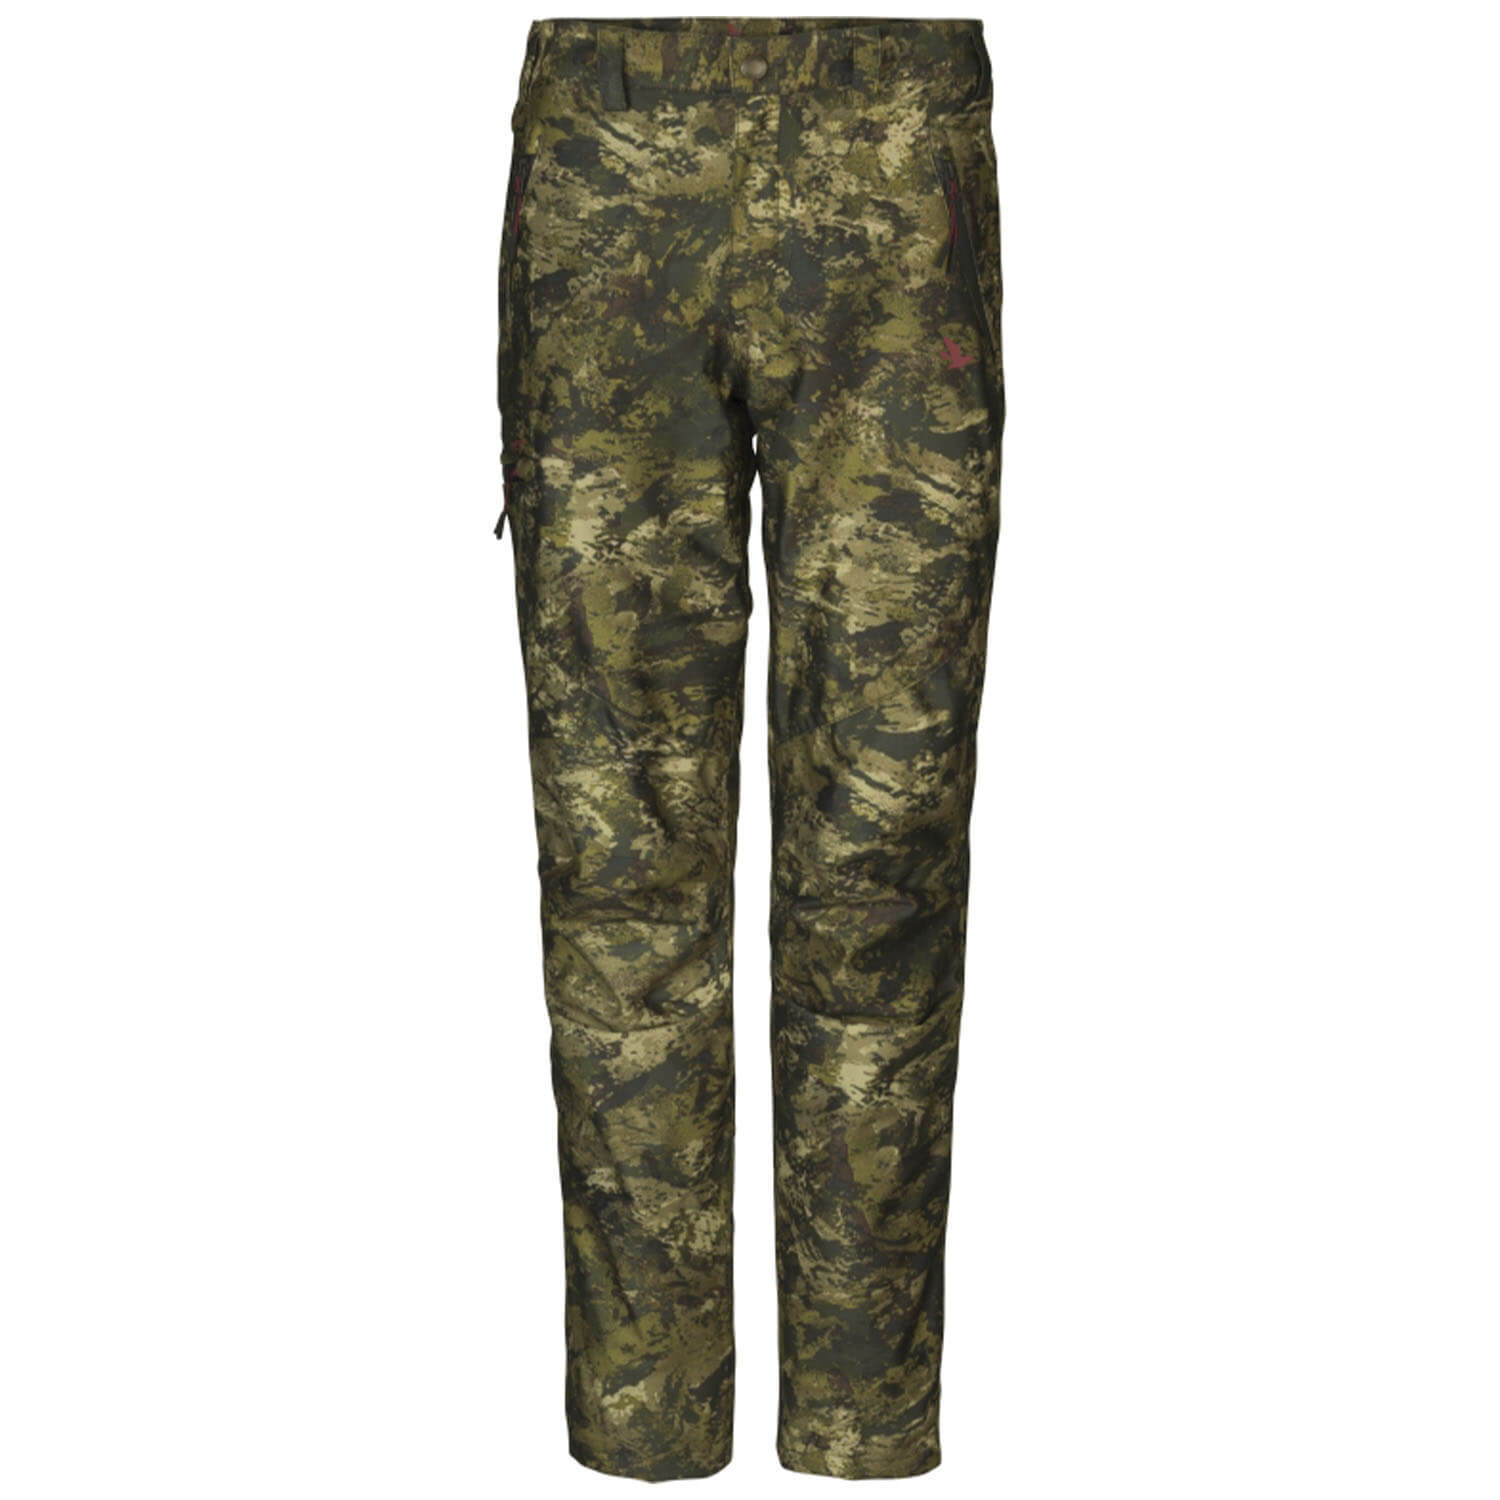  Seeland Dames jachtbroek beschikbaar (InVis) - Camouflage voor dames